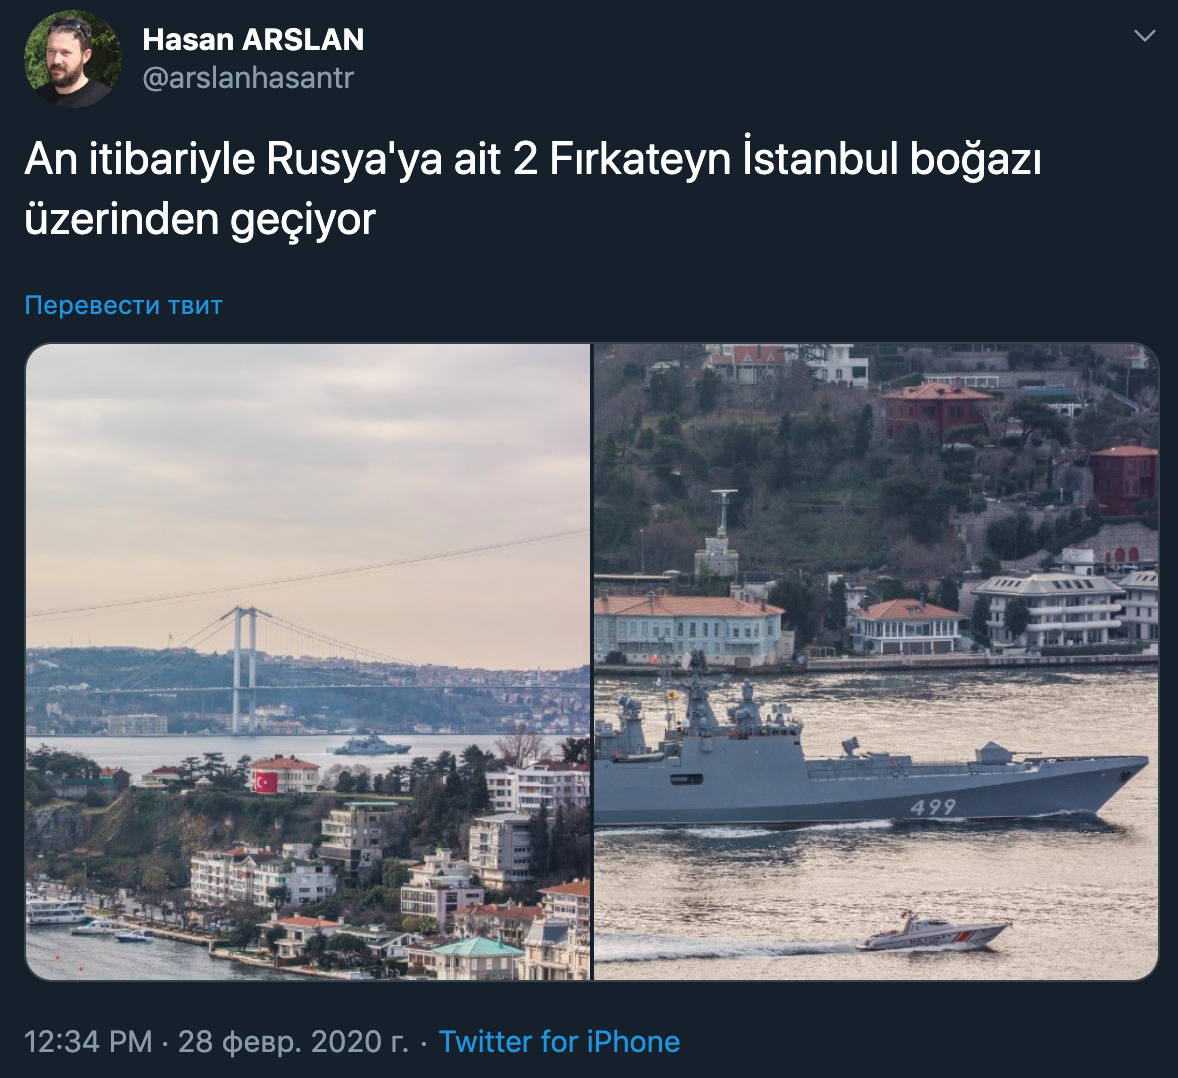 "Нас уничтожили русские проникающей бомбой": Турецкие СМИ сошли с ума